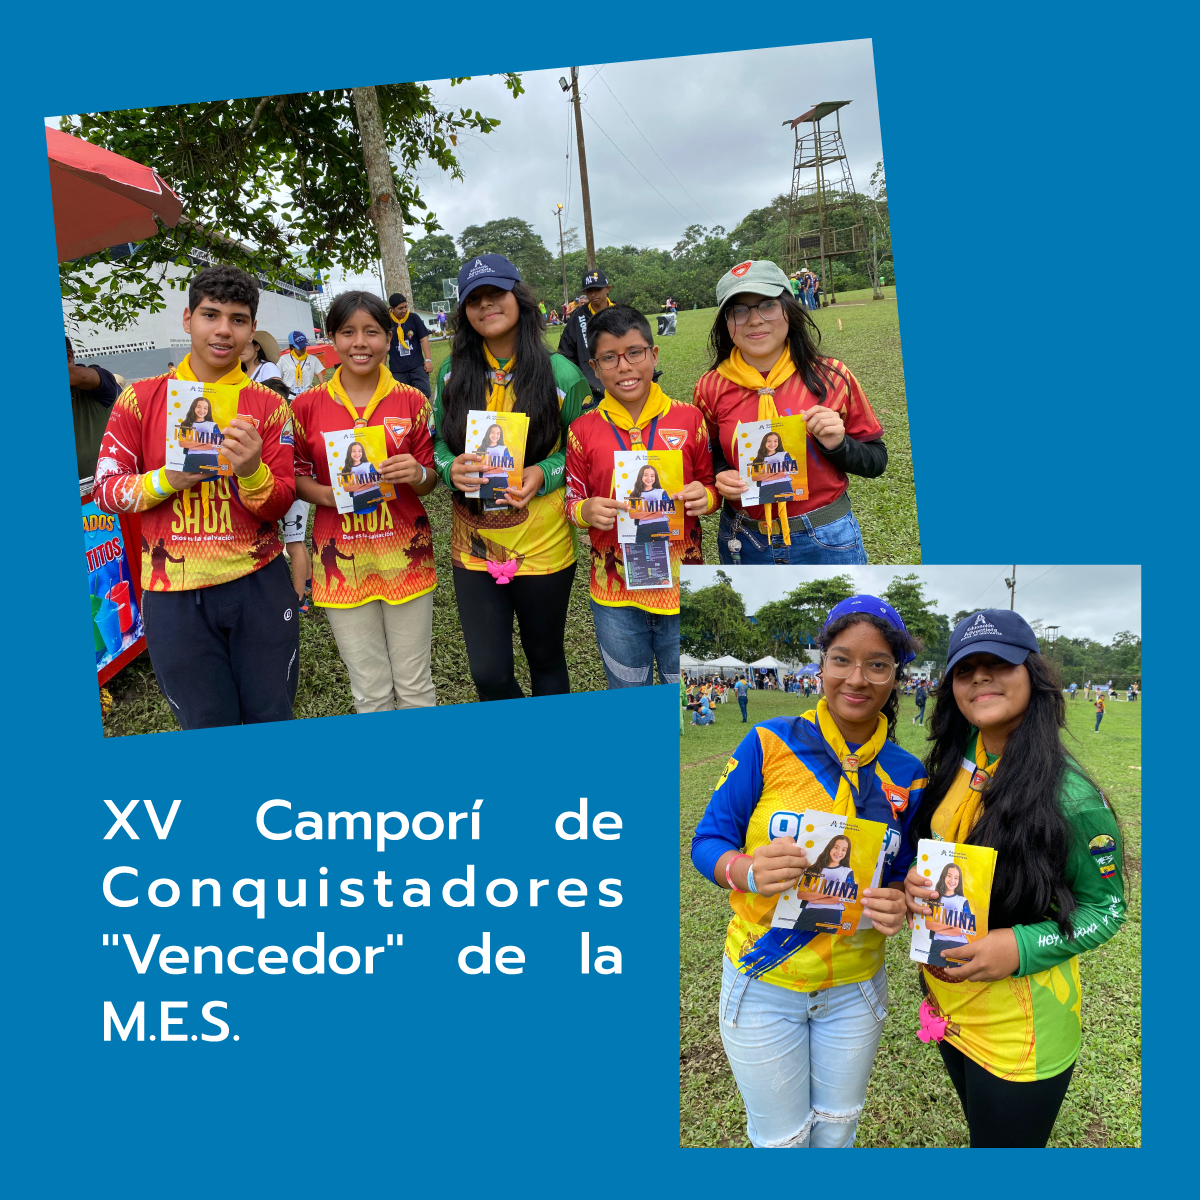 XV Camporí de Conquistadores "Vencedor" de la M.E.S.